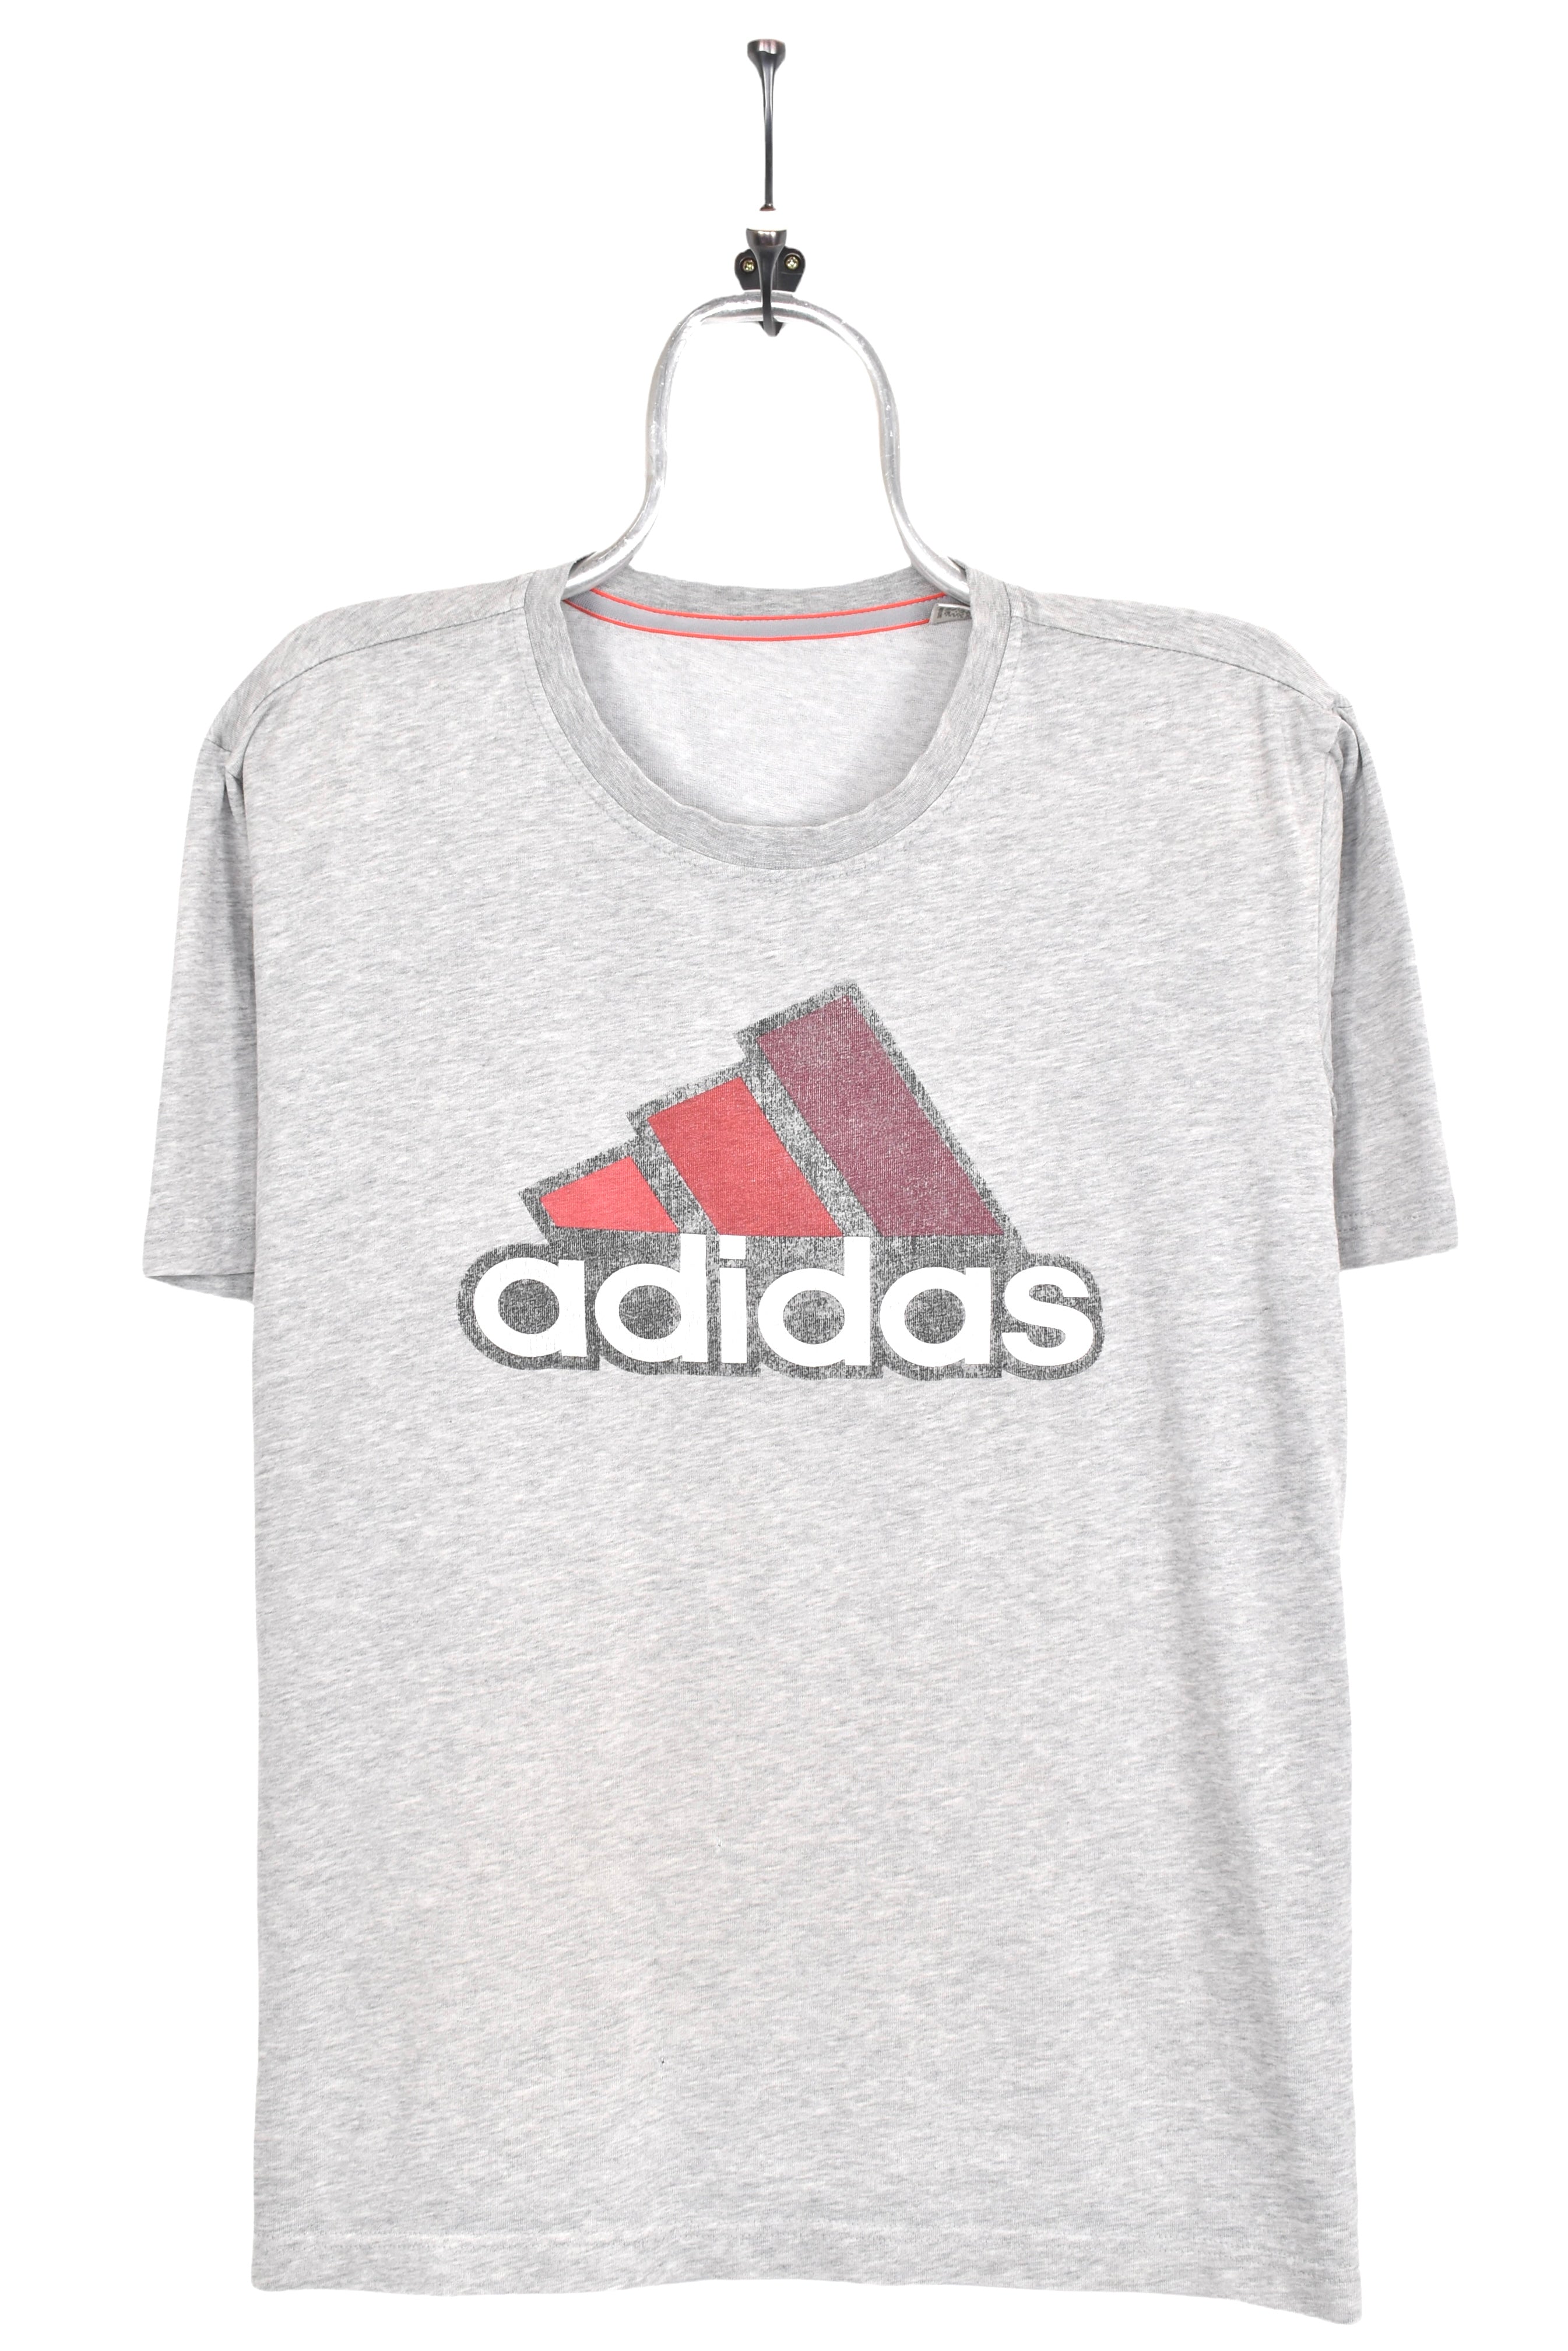 Modern Adidas shirt, athletic grey graphic tee - AU Medium ADIDAS